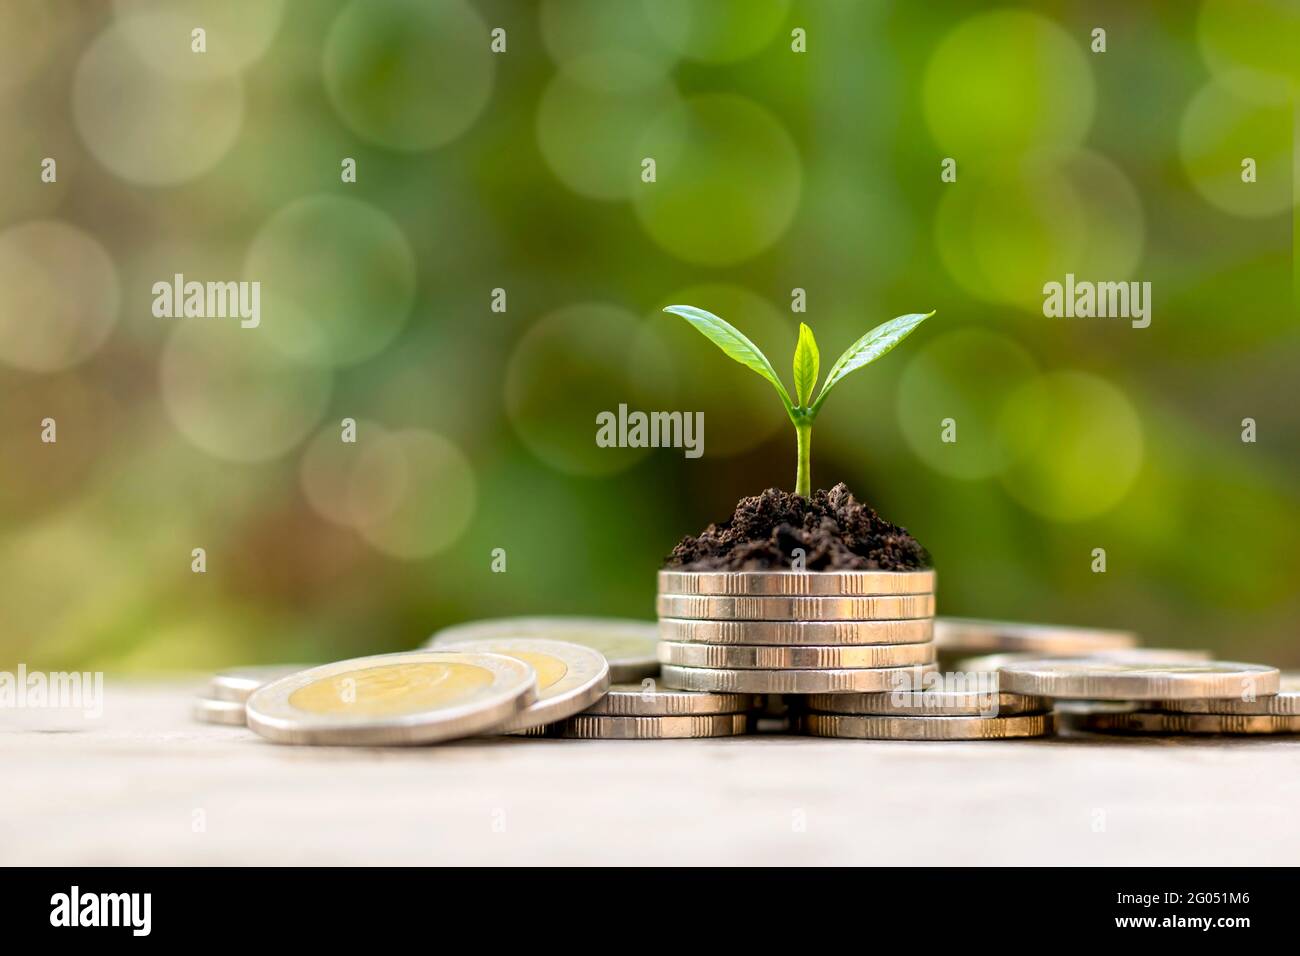 Der Baum wächst auf einem Haufen Münzen und einem grünen Hintergrund, um das finanzielle und wirtschaftliche Wachstum zu ermitteln. Stockfoto